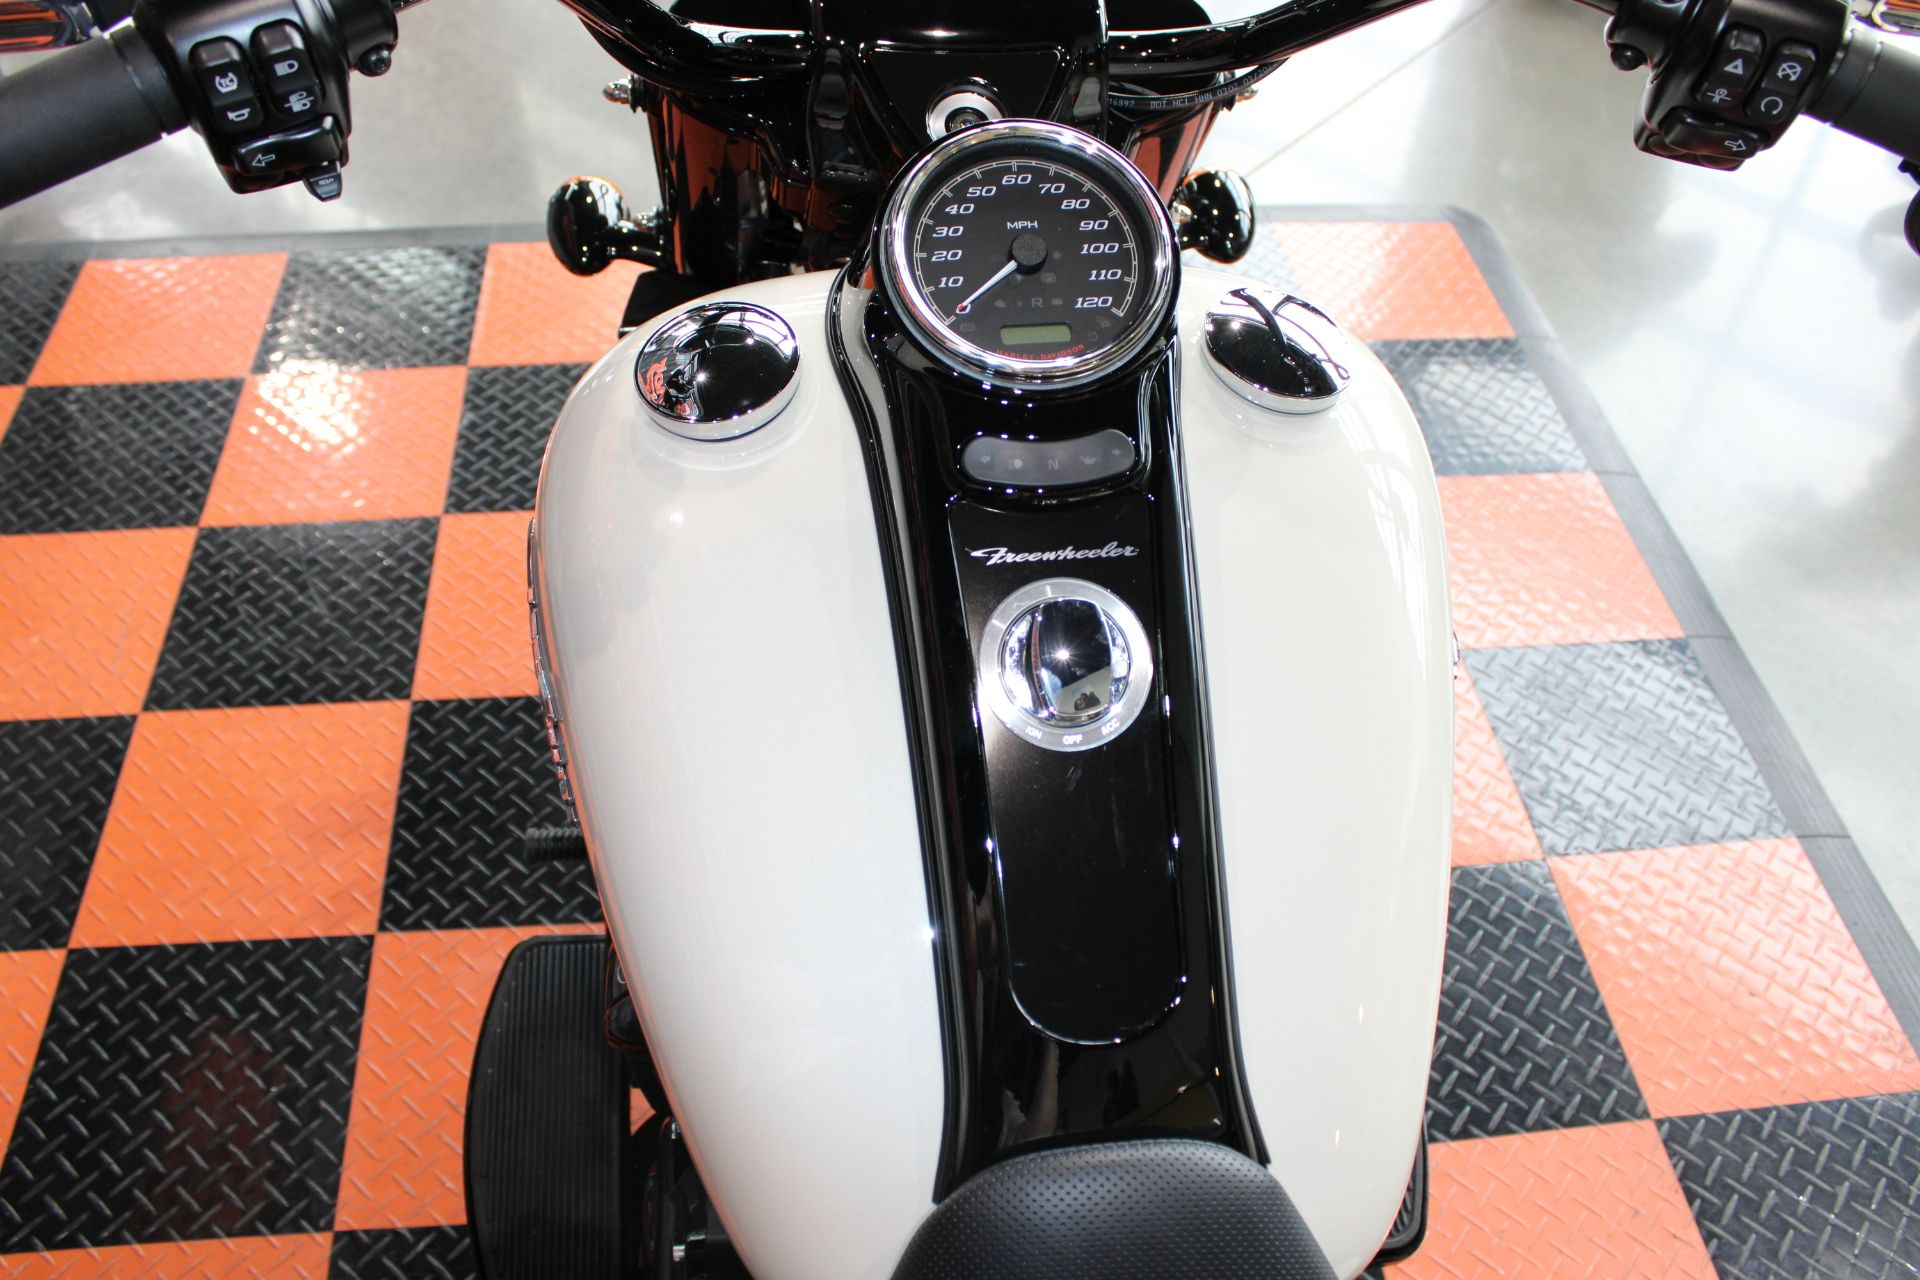 2023 Harley-Davidson Freewheeler® in Shorewood, Illinois - Photo 9